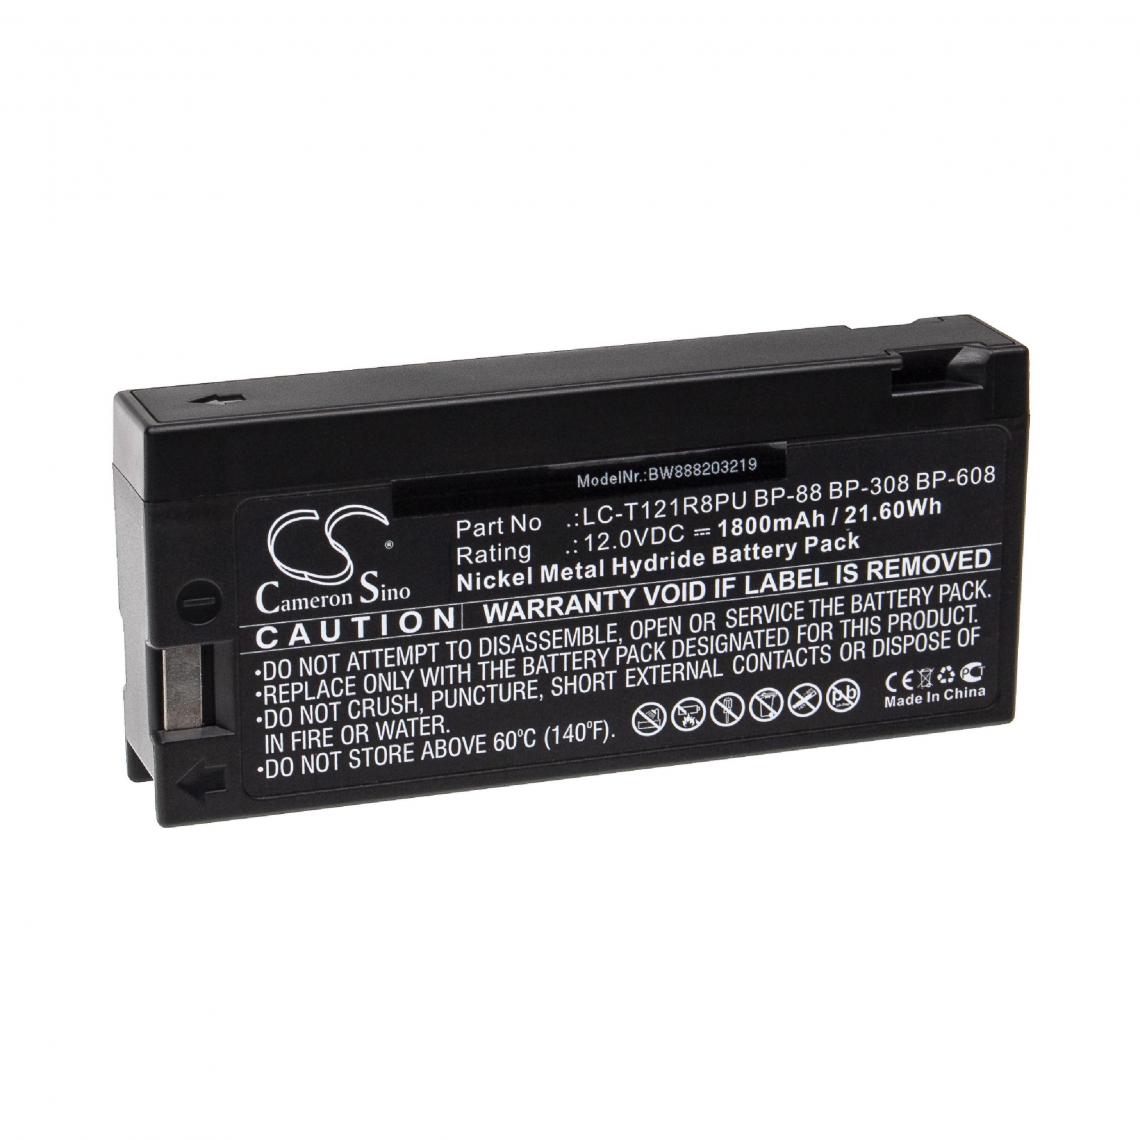 Vhbw - vhbw Batterie compatible avec JCPenney 855-8611, 855-8959, 890-1886, 890-1902, 890-2454 appareil médical (1800mAh, 12V, NiMH) - Piles spécifiques